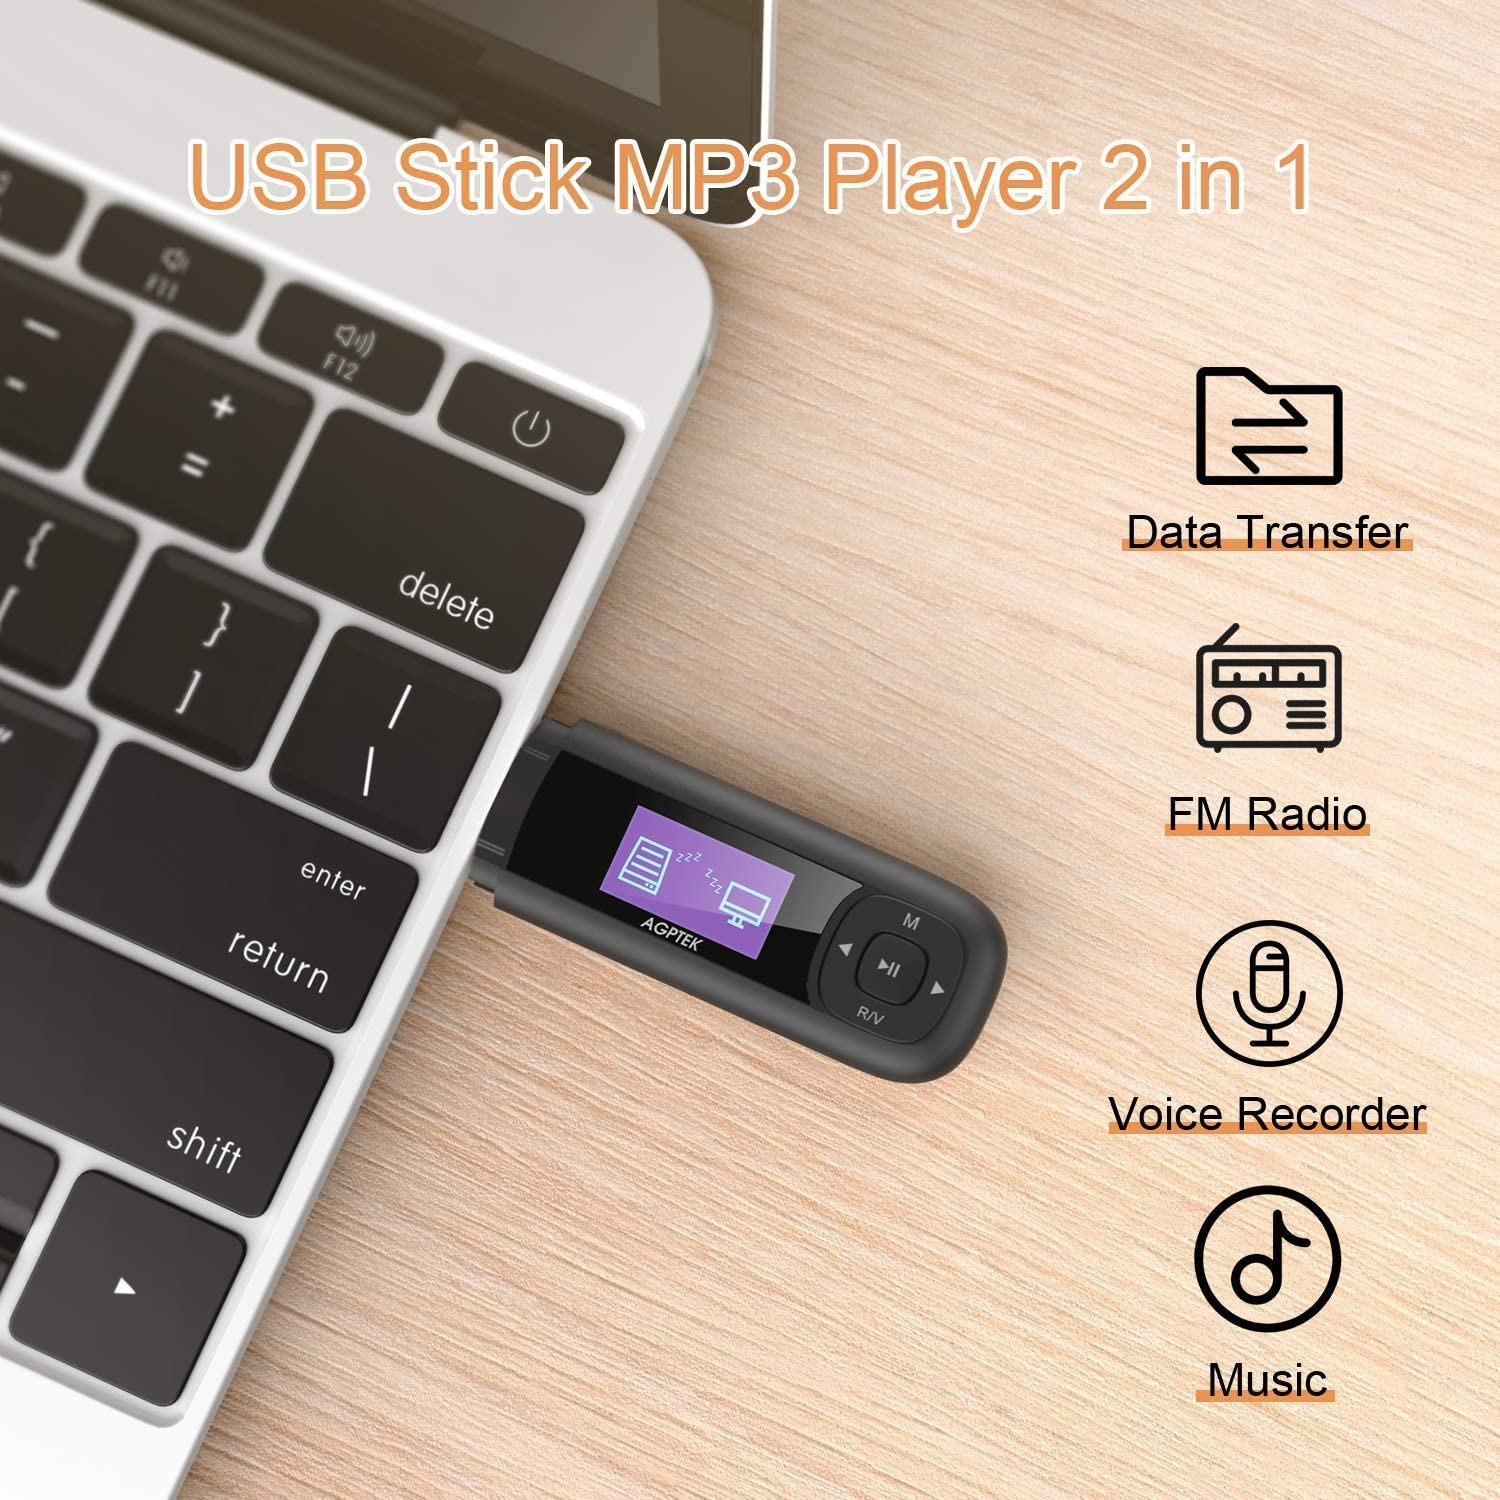 AGPTEK 8GB Tragbare USB MP3 Player 1 Zoll LCD Display USB Stick Mit FM, Aufnahme